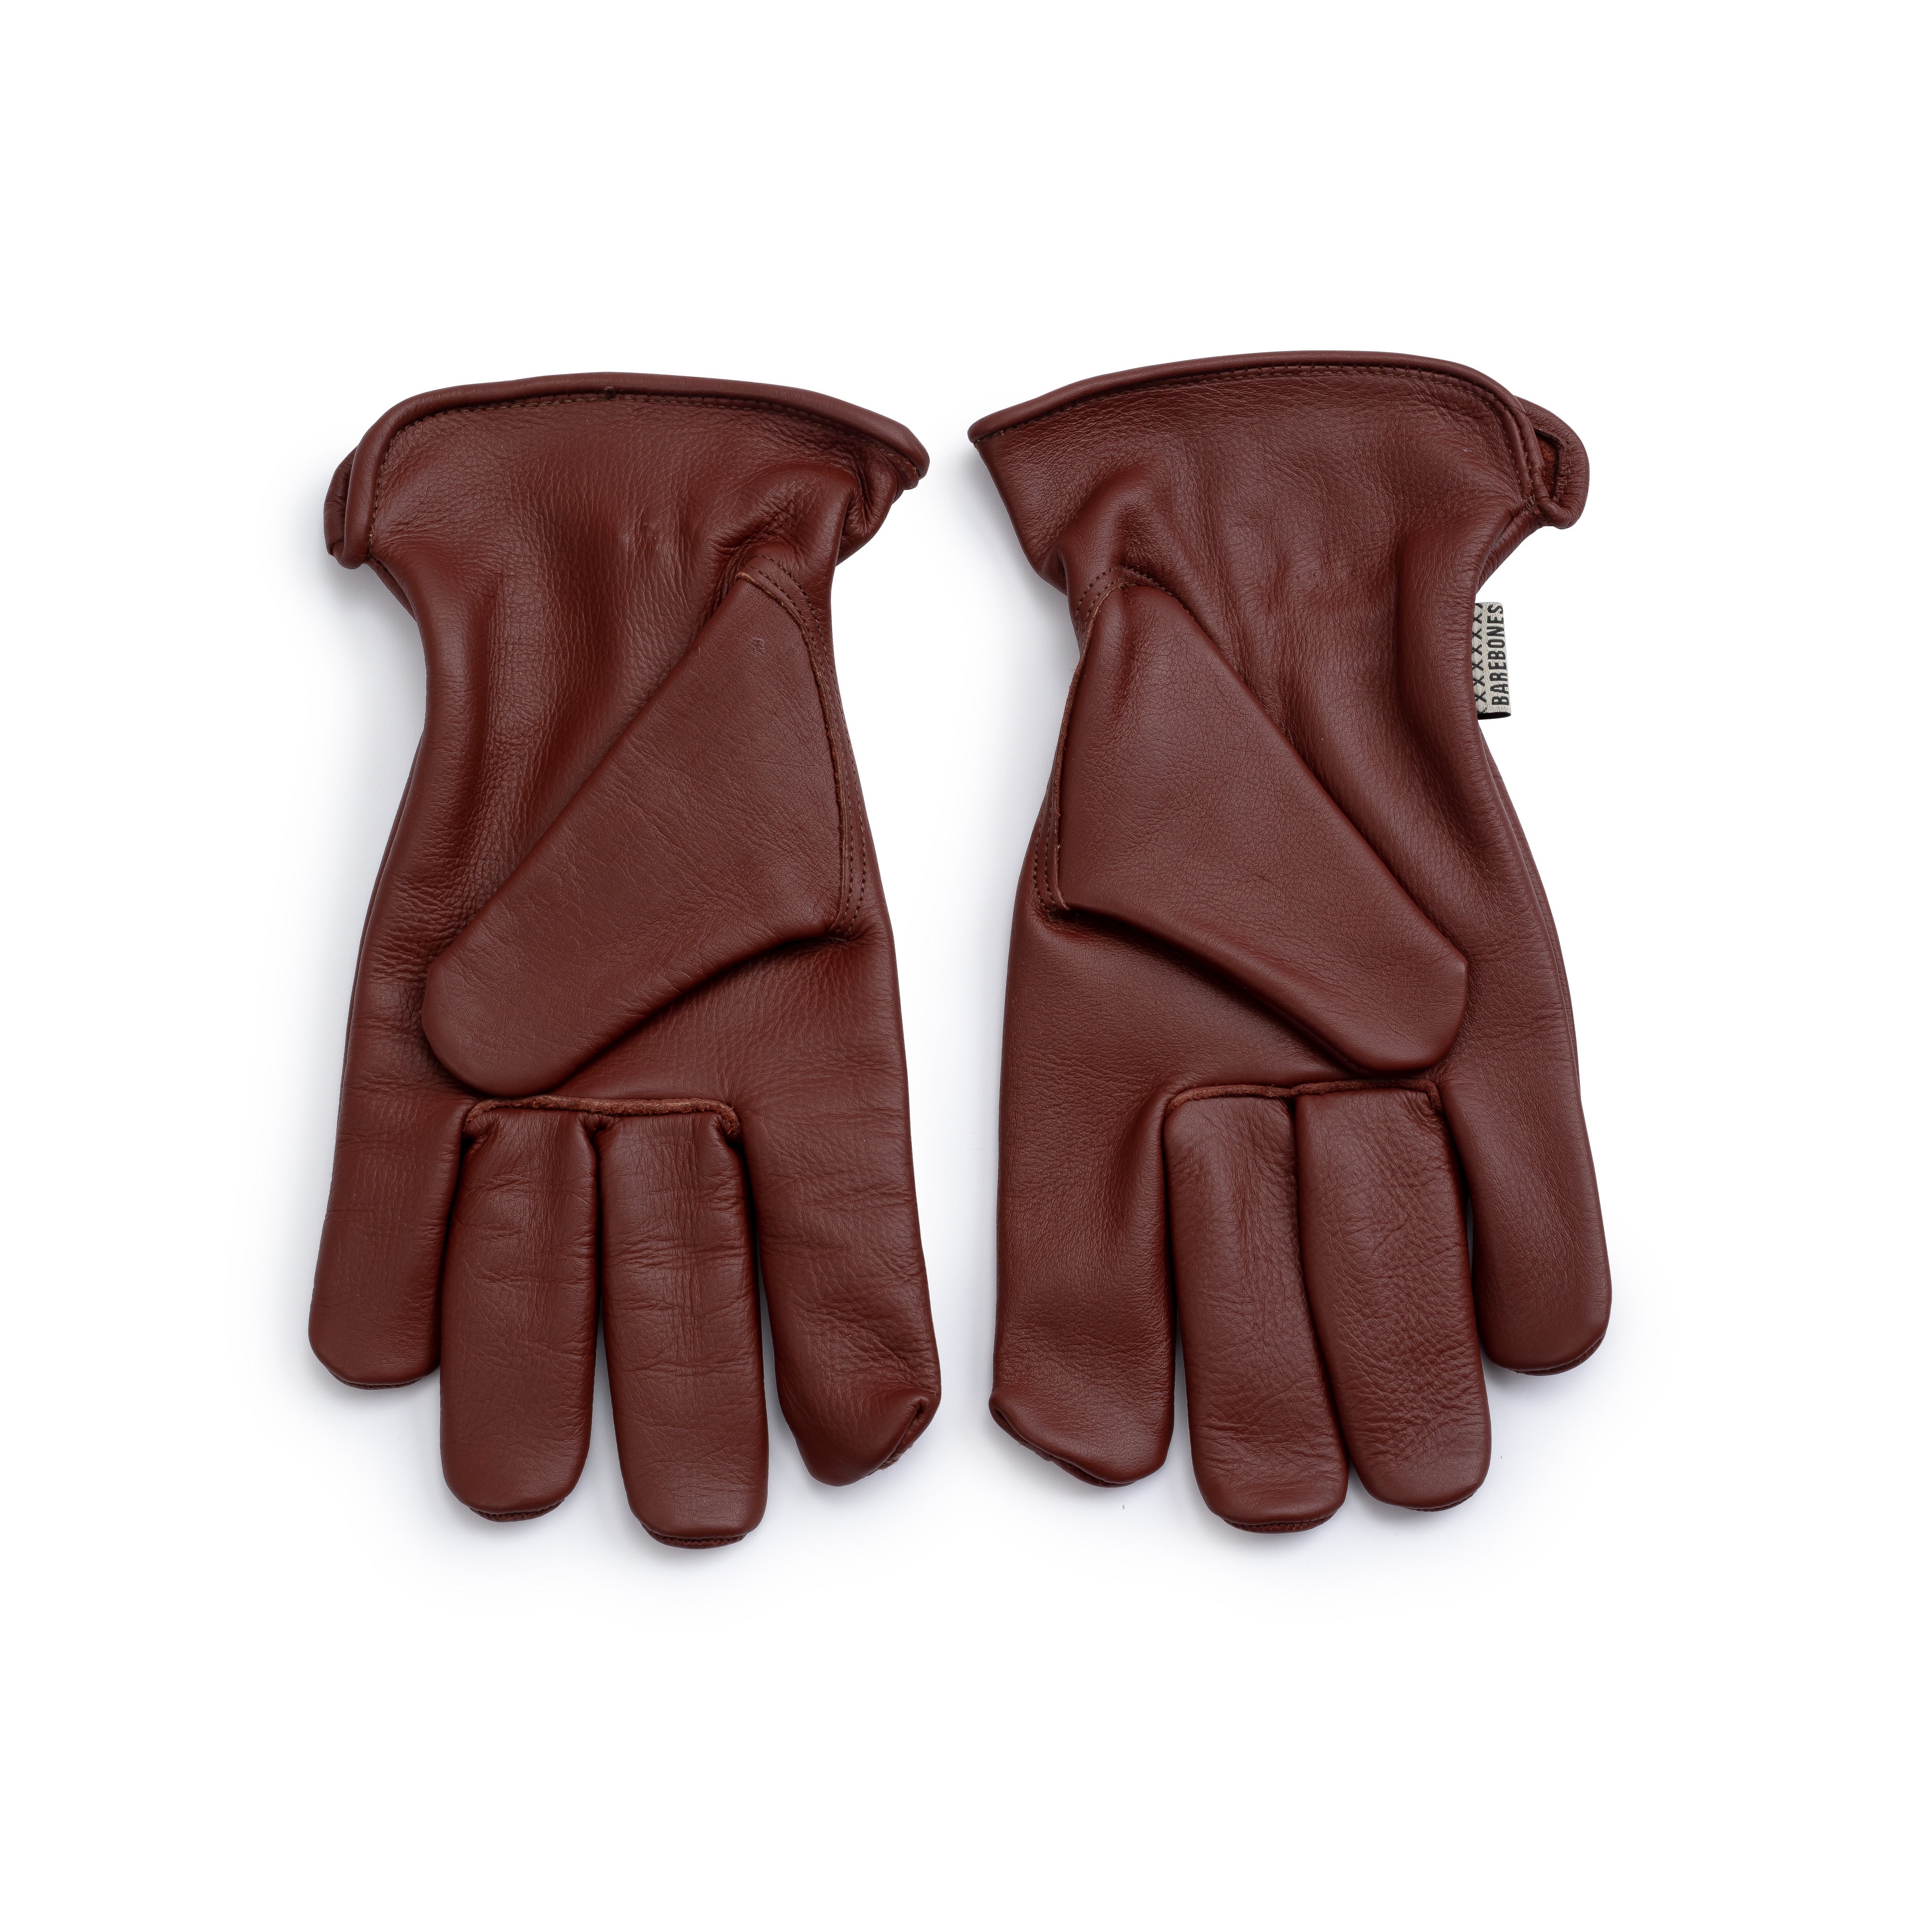 Barebones Work Gloves